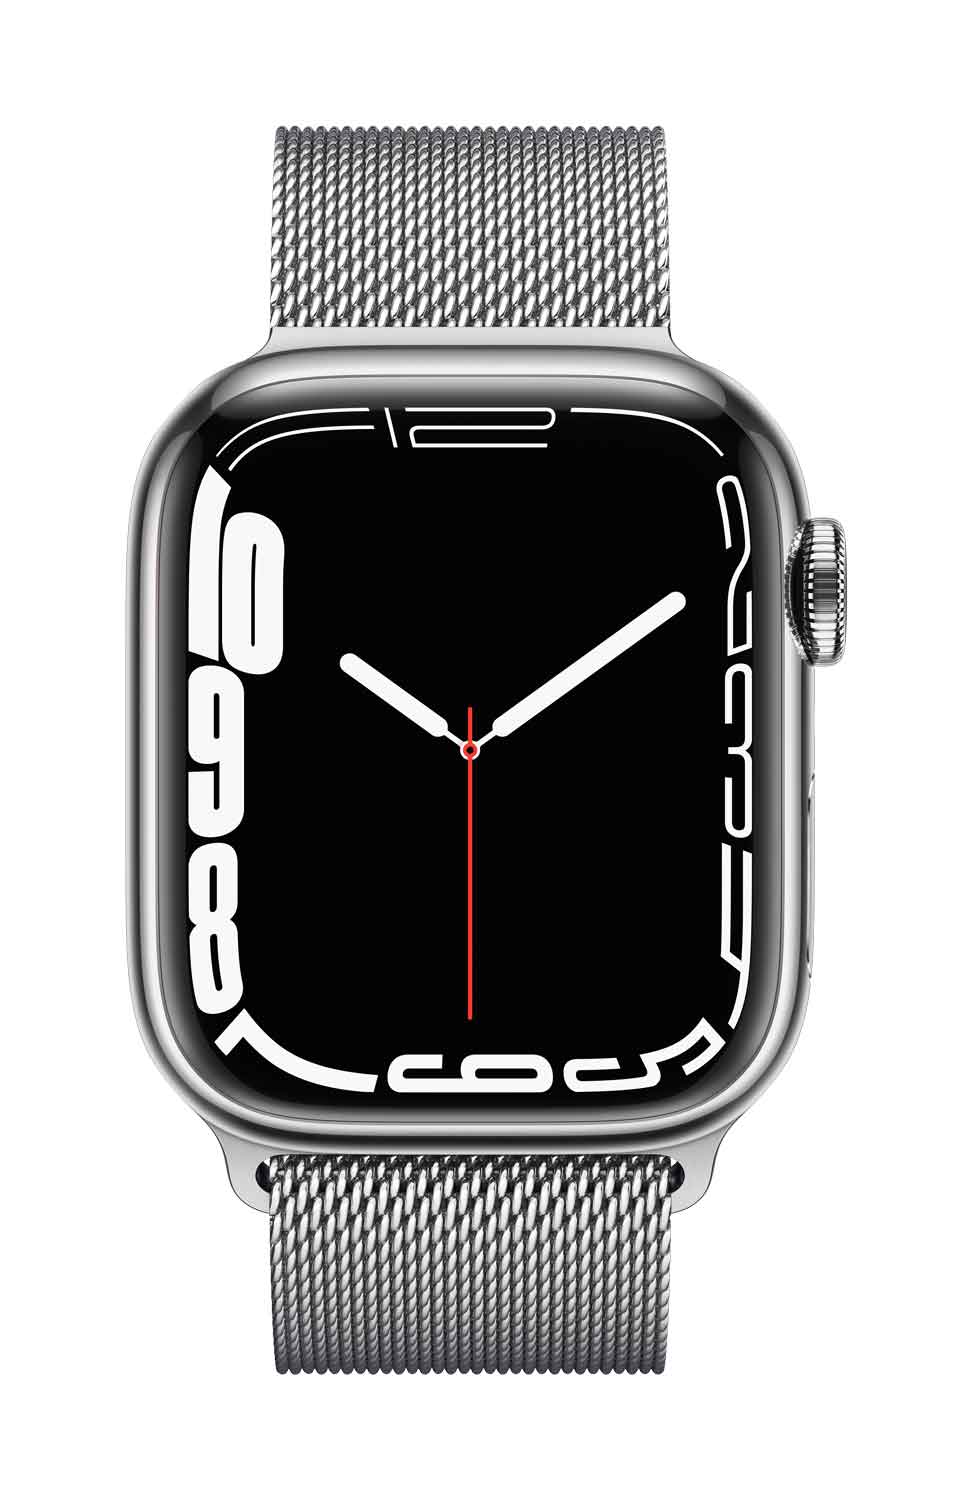 Apple Watch S7 Edelstahl 41mm Cellular Silber Milanaise silber 41mm Edelstahlgehäuse Silber, Milanaise Armband silber. Armband 150-200 mm Umfang. (MKHX3FD/A)